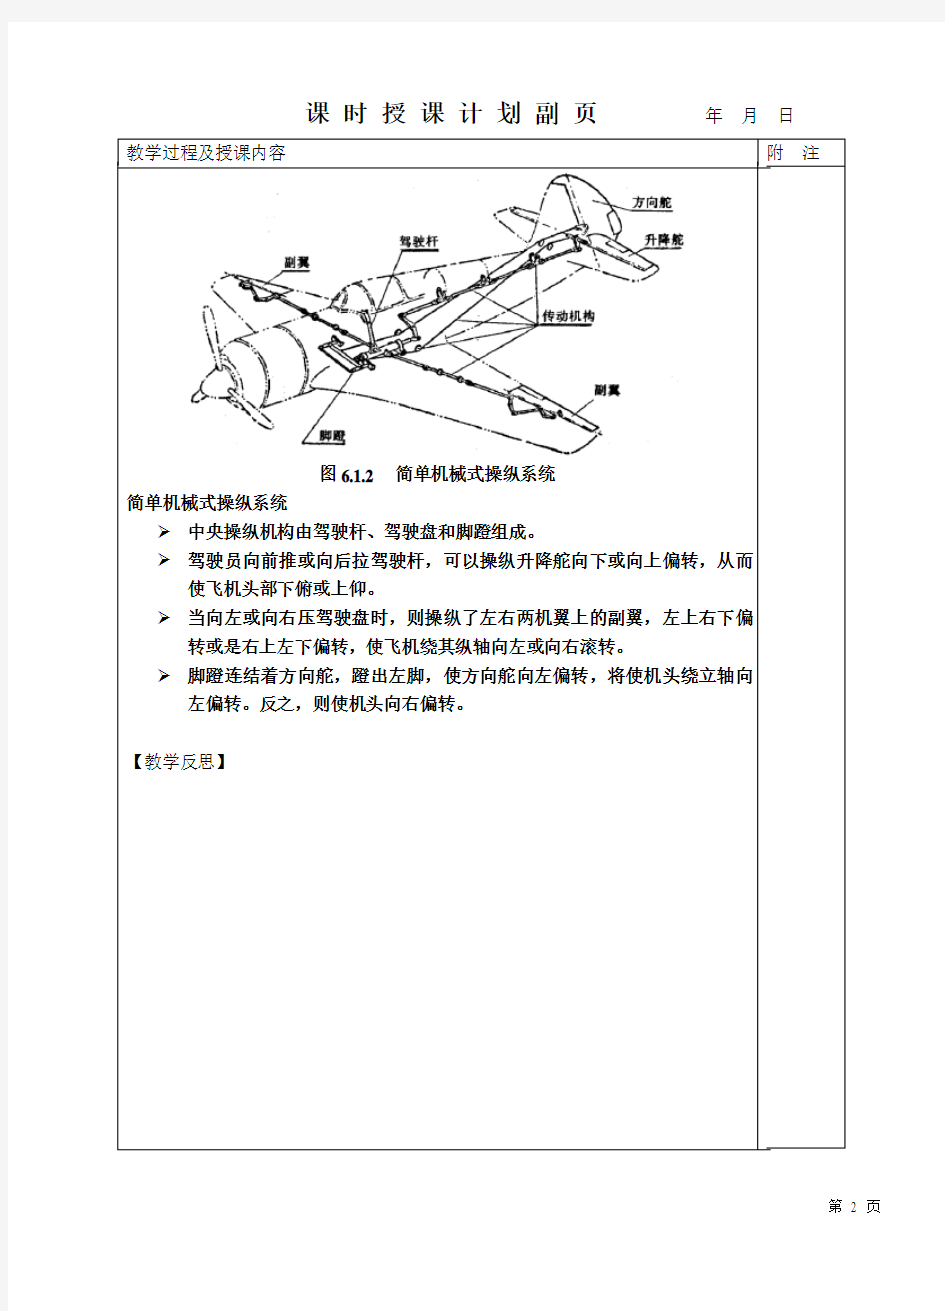 29-飞机电气系统电路分析6.1 飞机操纵系统概况